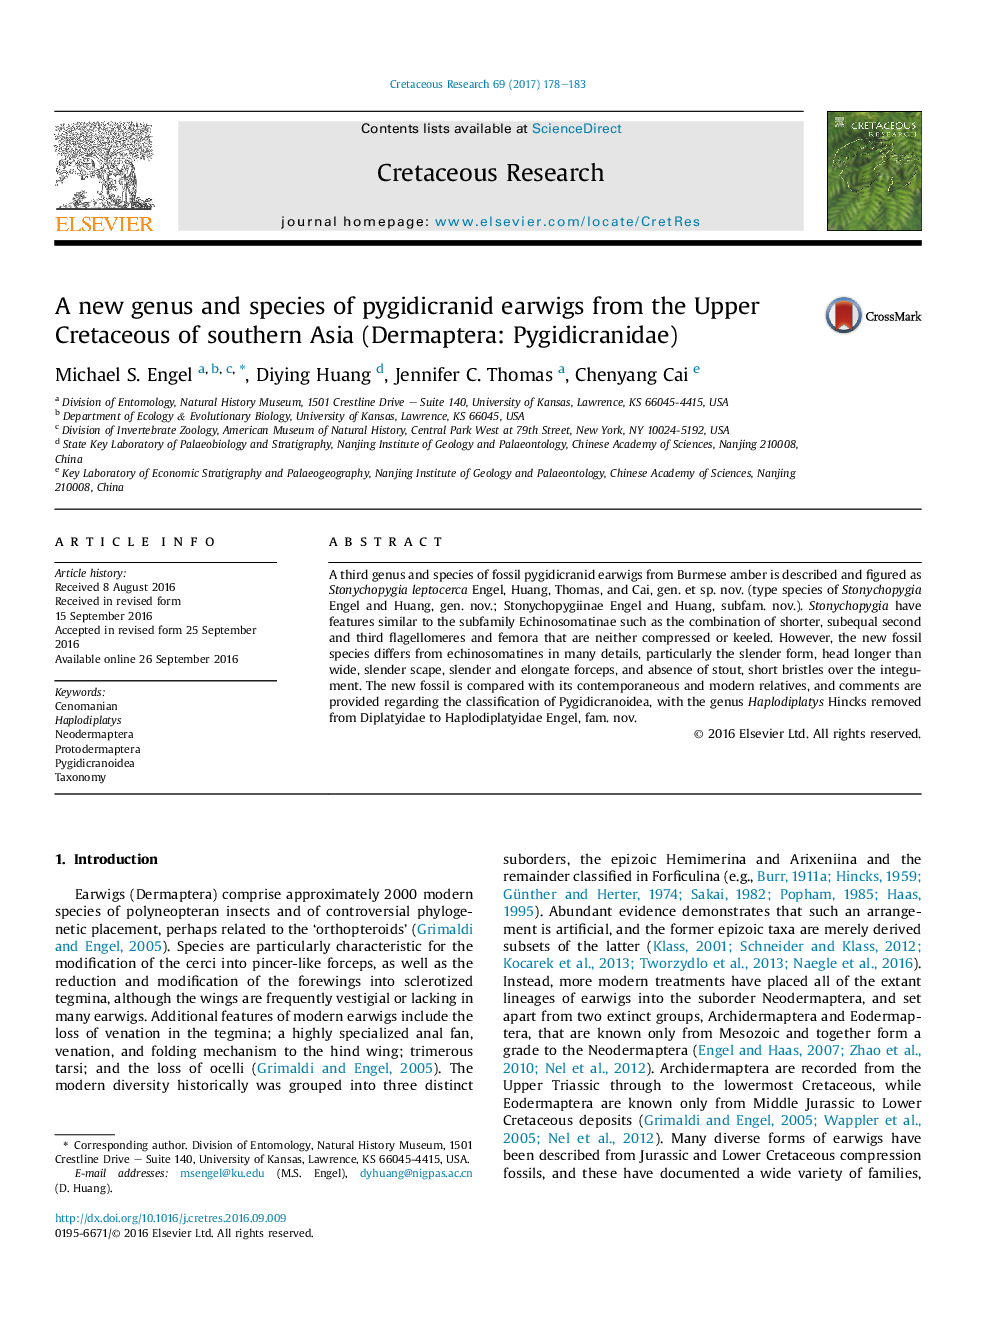 جنس و گونه های جدیدی از کرتاسه بالا از آسیای جنوب شرقی (درماپترا: Pygidicranidae) از گونه های (پیگیدایکراینید) گوش‌خیزک